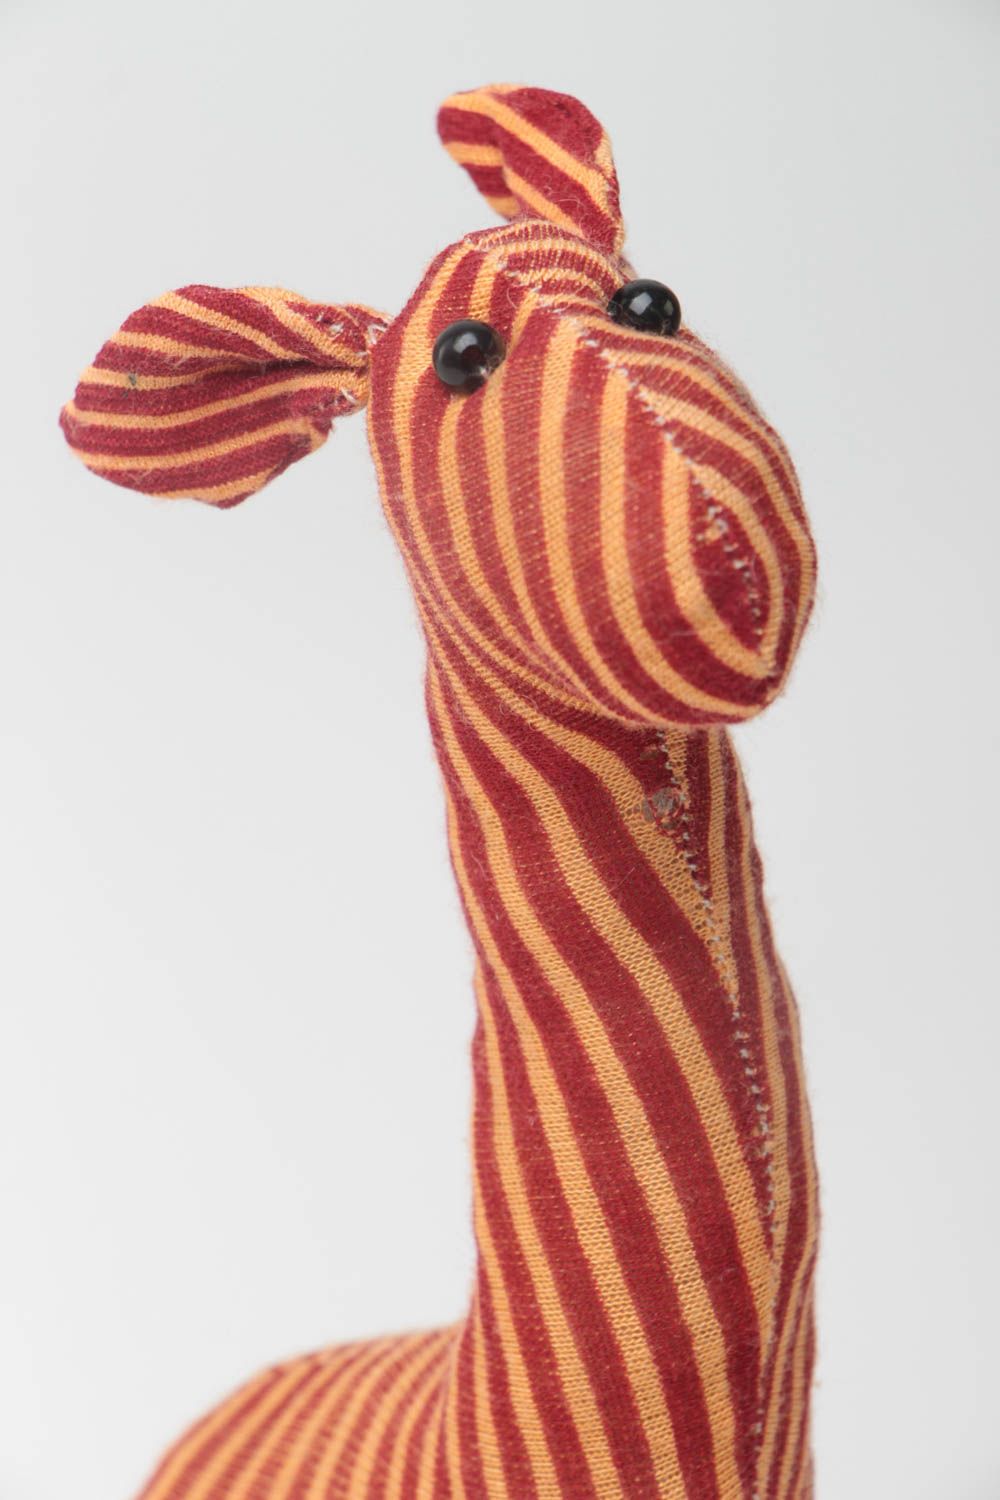 Handmade Stoff Kuscheltier Giraffe weich gestreift lustig schön für Kinder foto 3